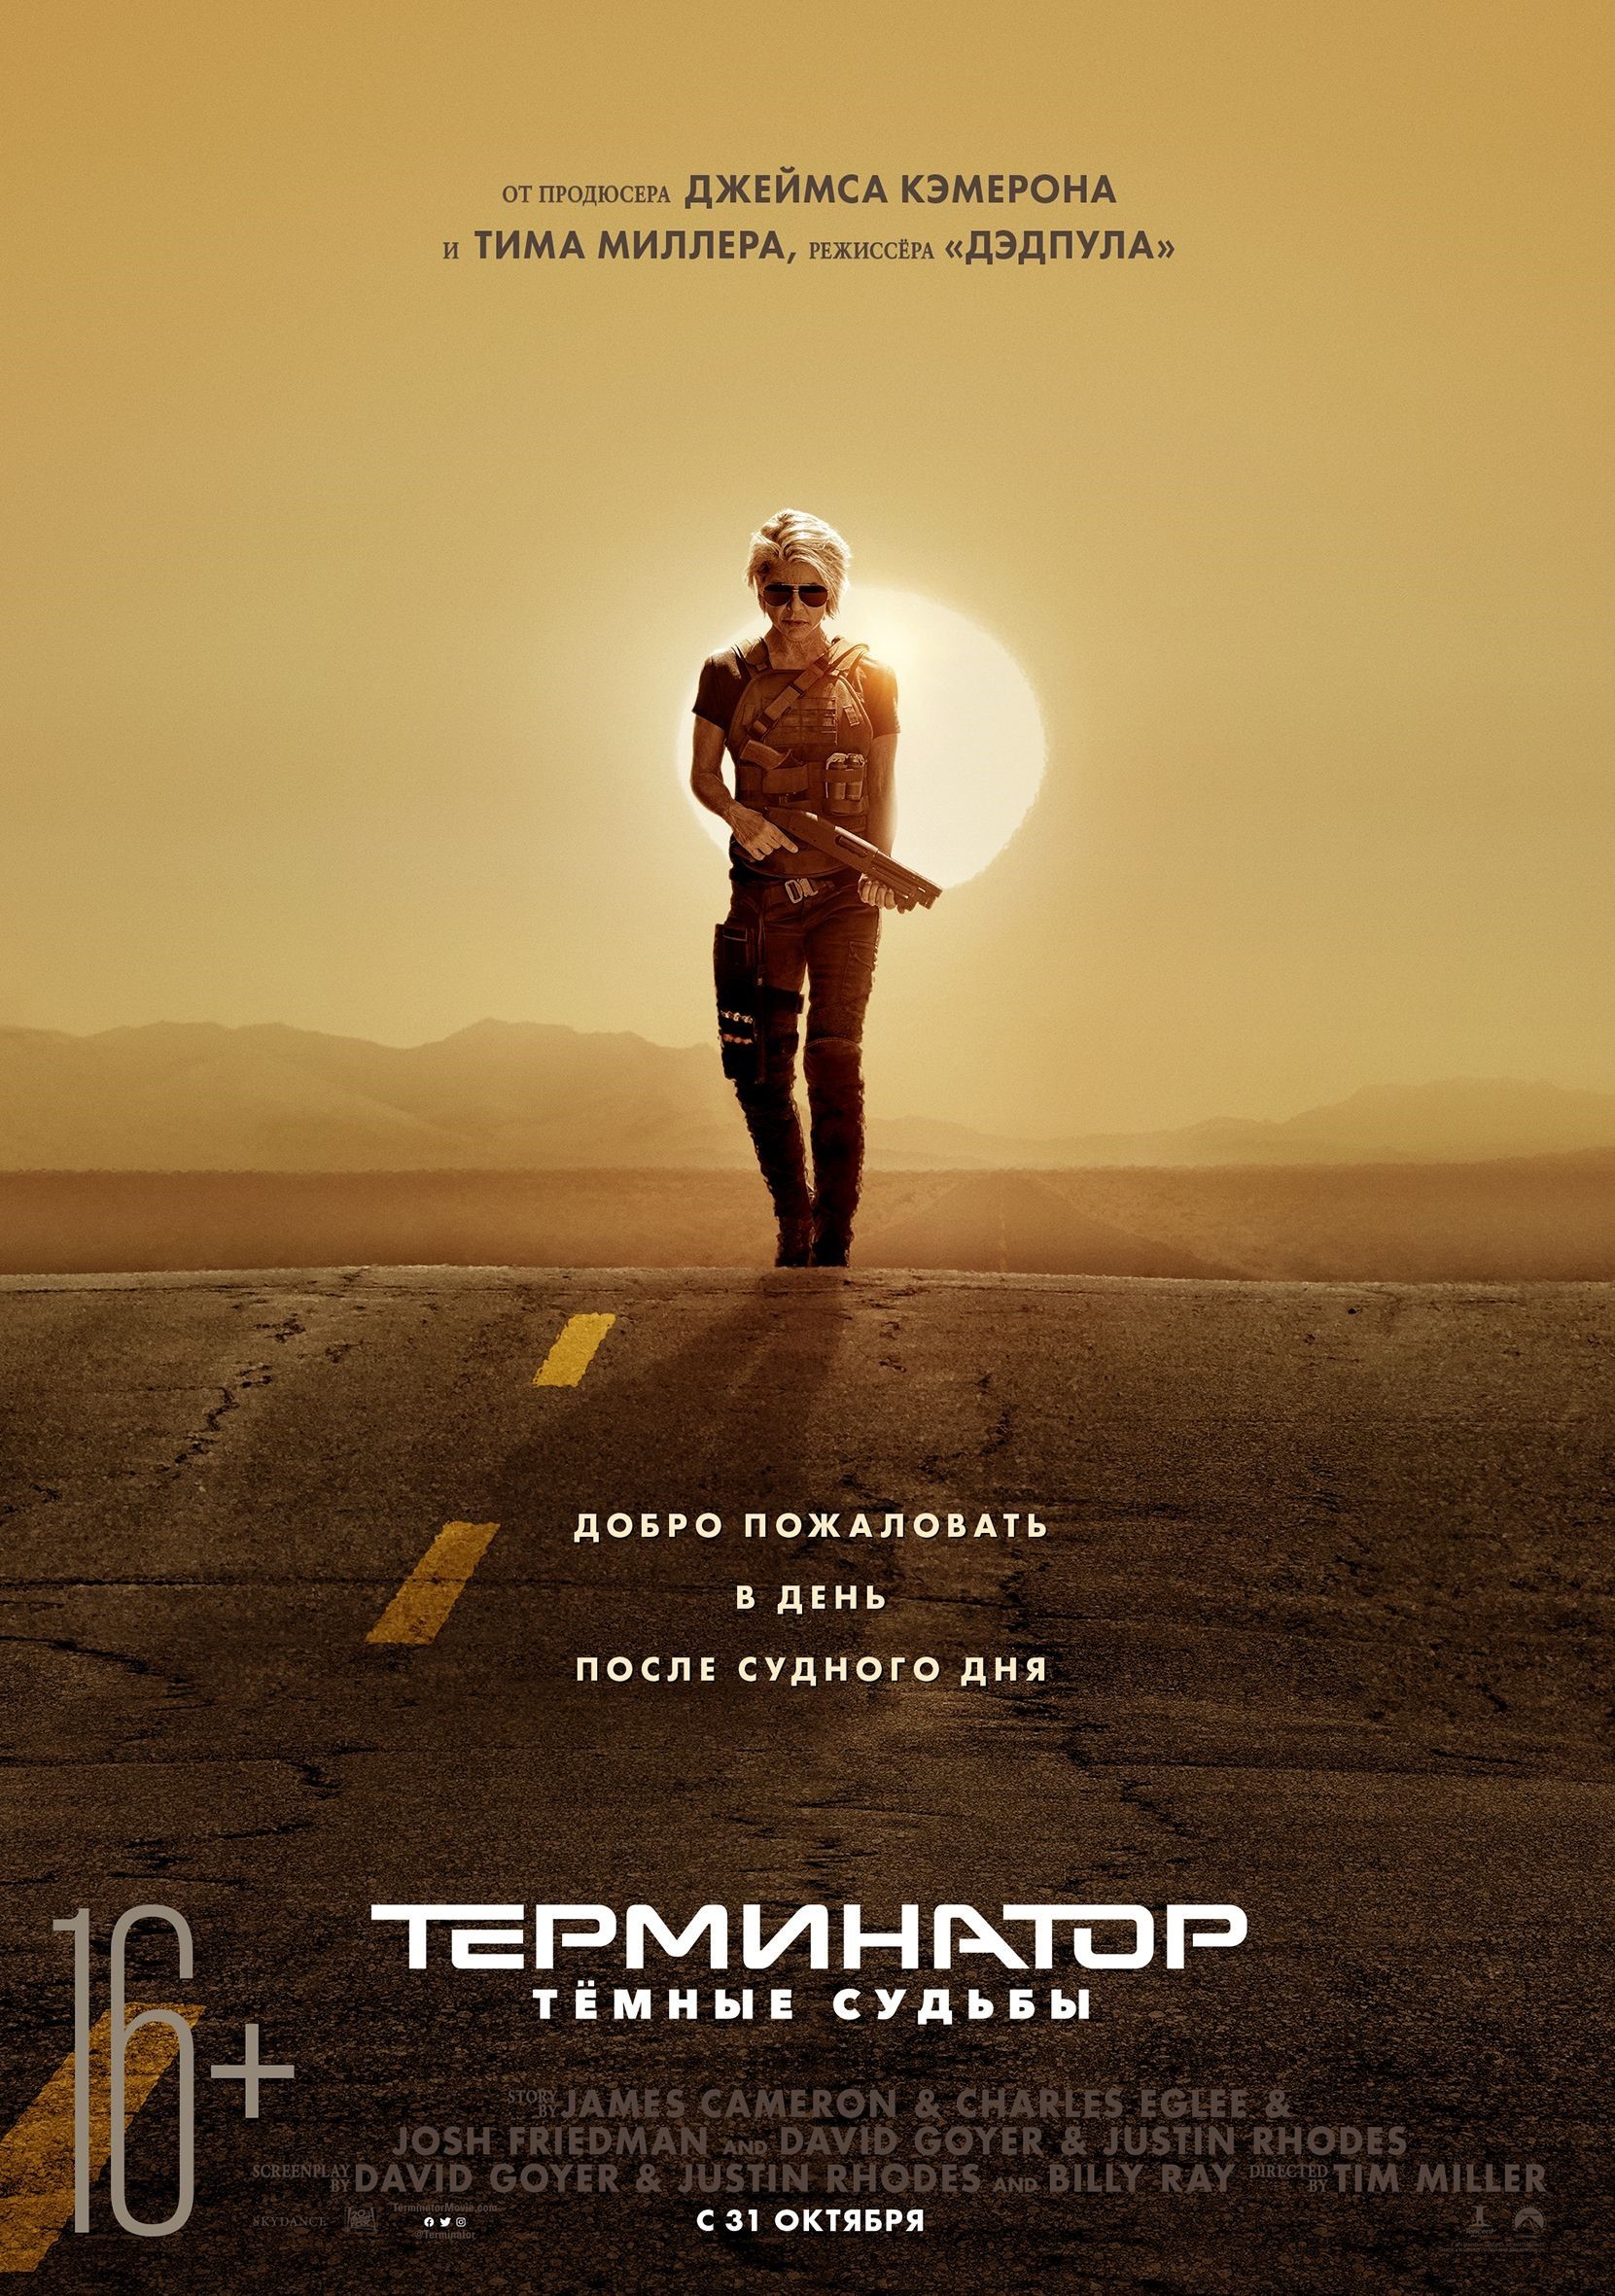 Терминатор: Темные судьбы / Terminator: Dark Fate (2019) отзывы. Рецензии. Новости кино. Актеры фильма Терминатор: Темные судьбы. Отзывы о фильме Терминатор: Темные судьбы